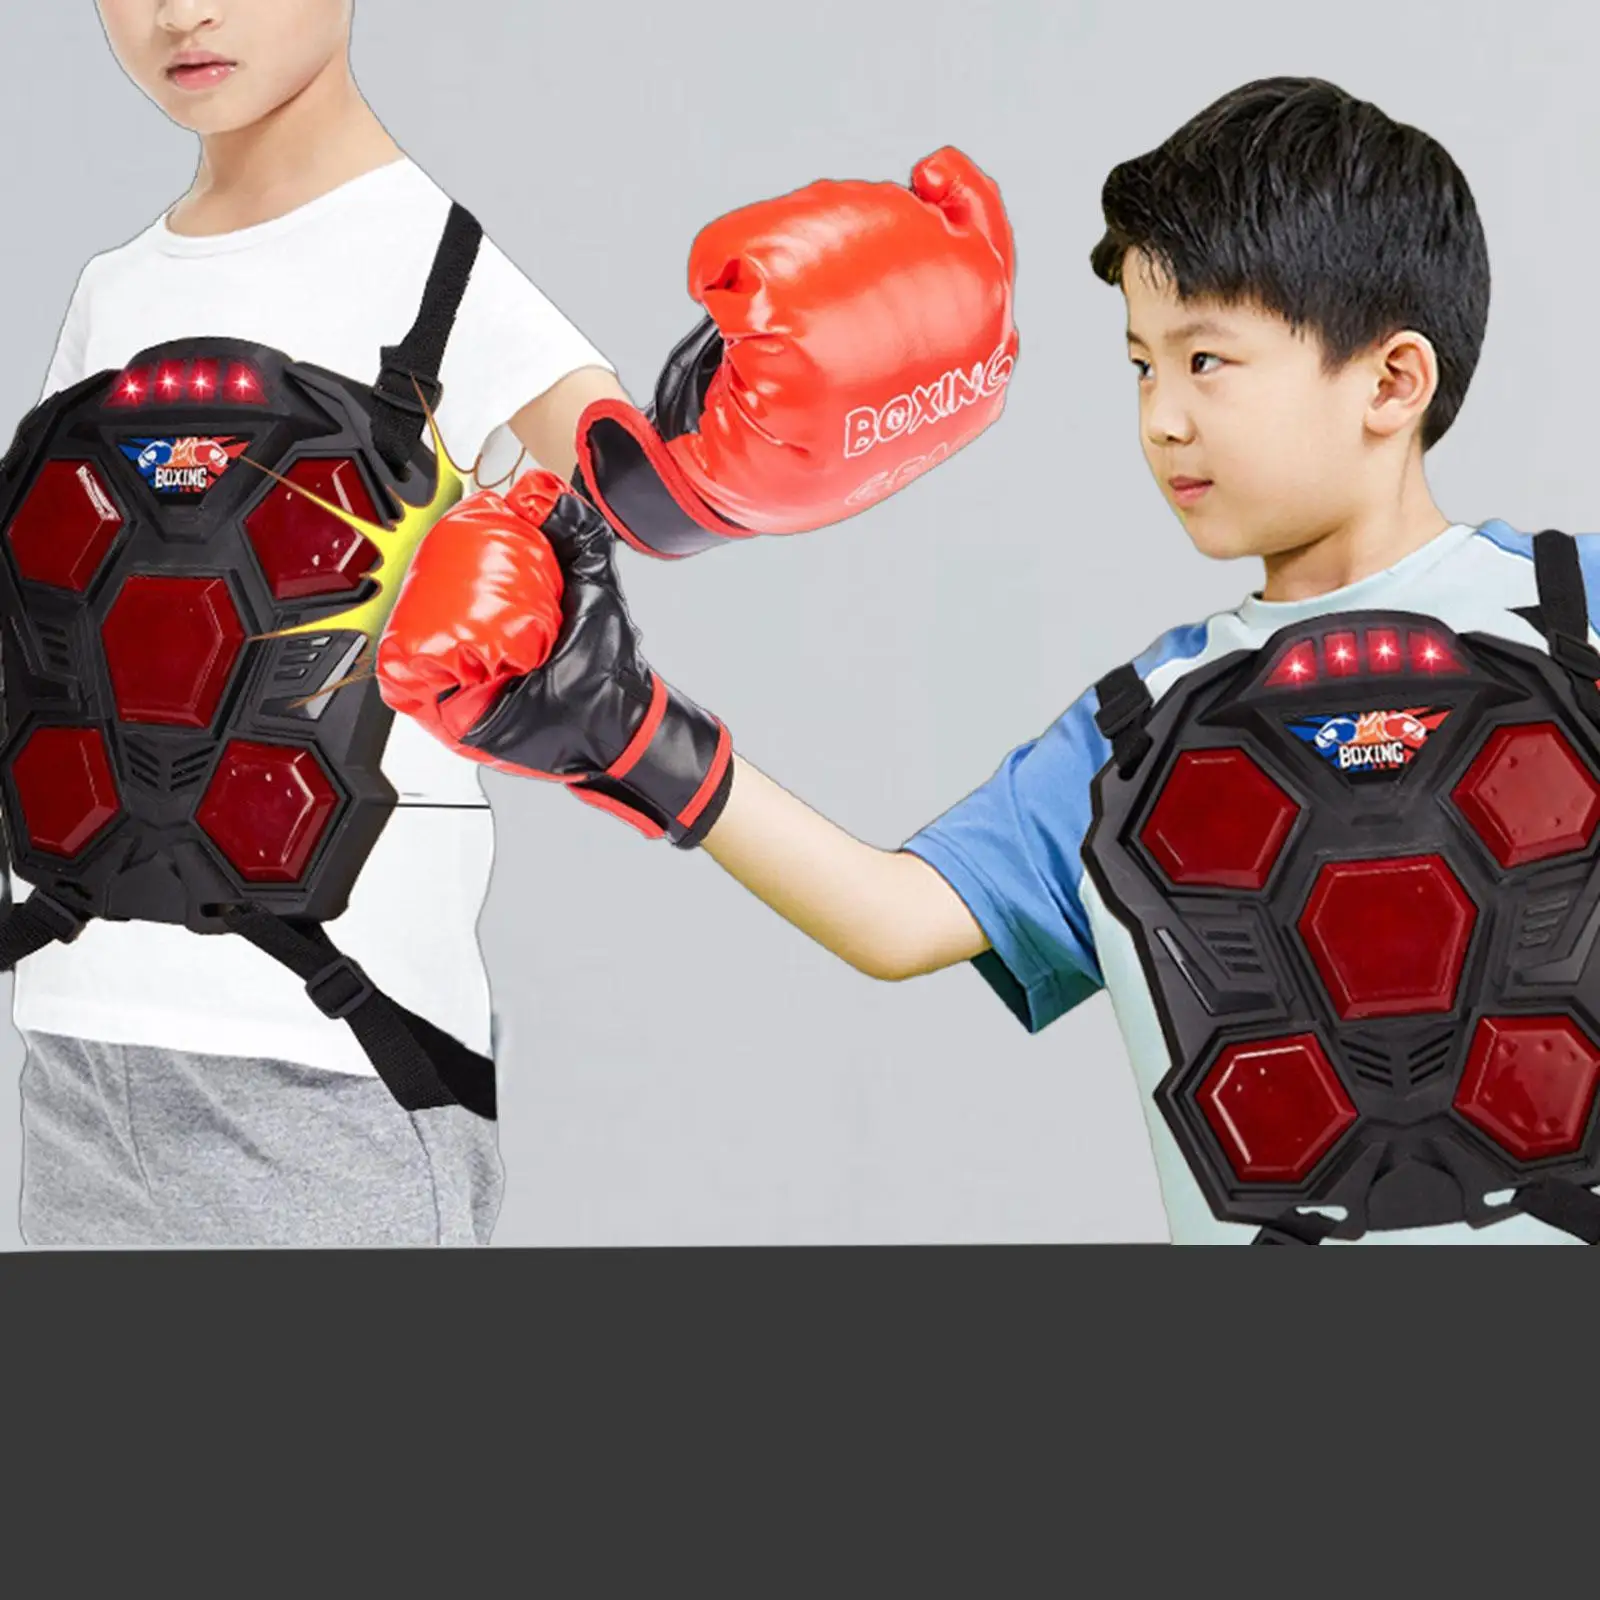 Electronic Boxing Machine with Light Punching Pad for Focus Taekwondo Sanda